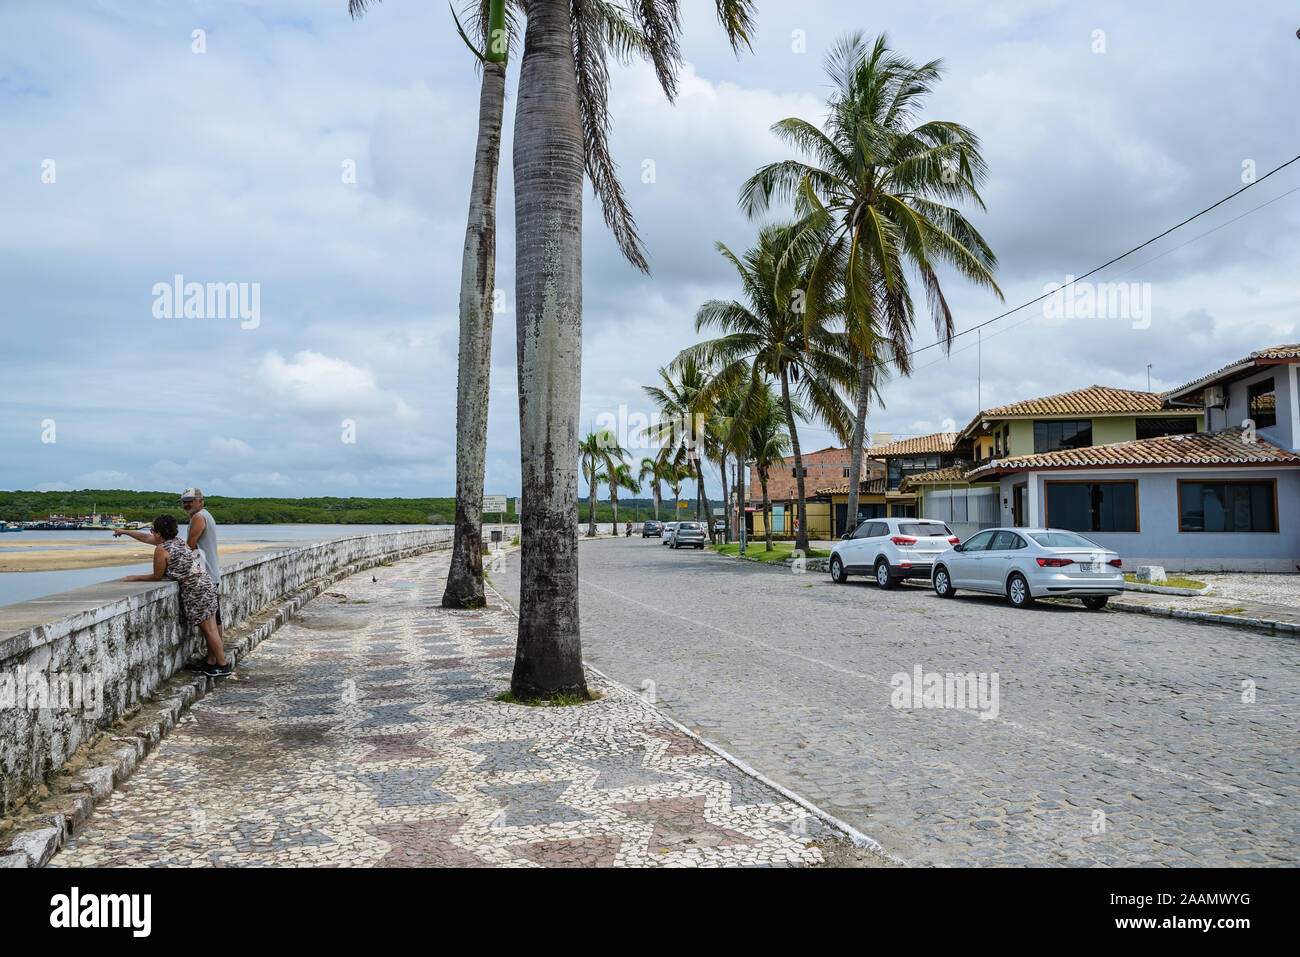 Schönes Mosaik Seite gehen unter Palmen in der Hafenstadt Porto Seguro, Bahia, Brasilien, Südamerika. Stockfoto